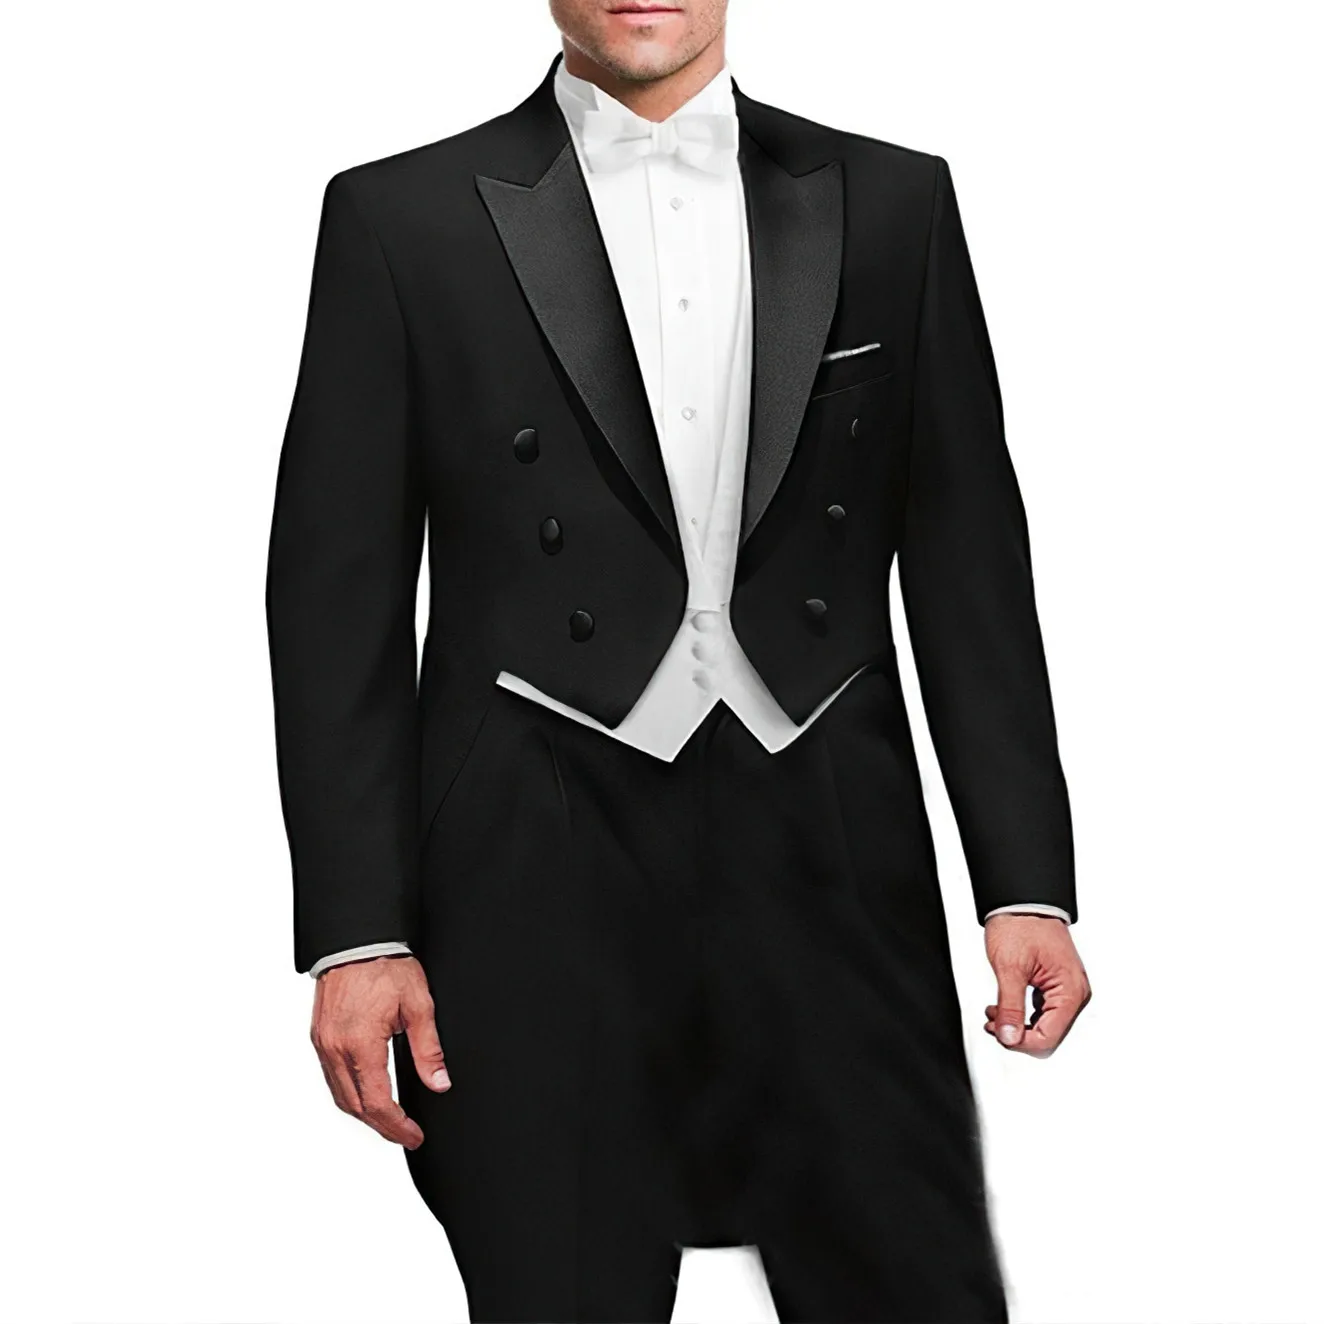 Yeni İtalyan Tailcoat tasarım erkek takım elbise düğün balo (ceket + pantolon + yelek) zarif Terno erkek takım elbise seti Groomsmen damat smokin